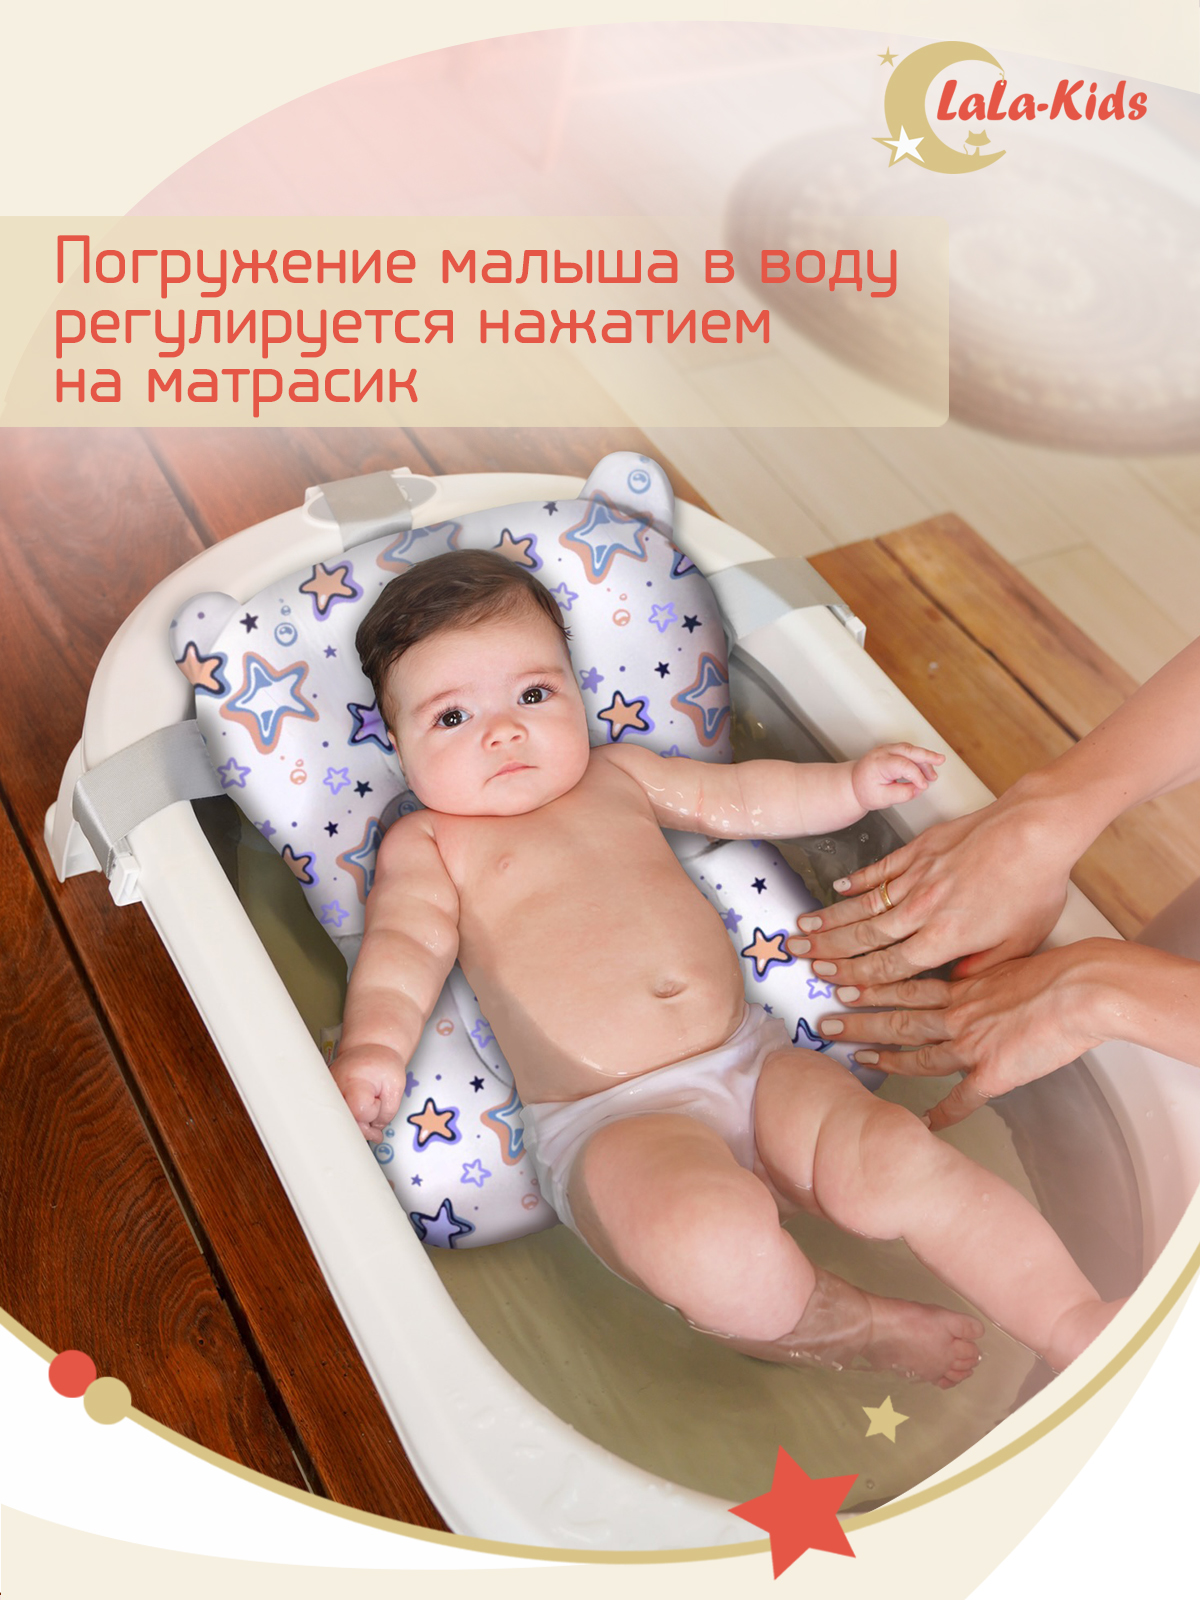 Детская ванночка LaLa-Kids складная с матрасиком для купания новорожденных - фото 18